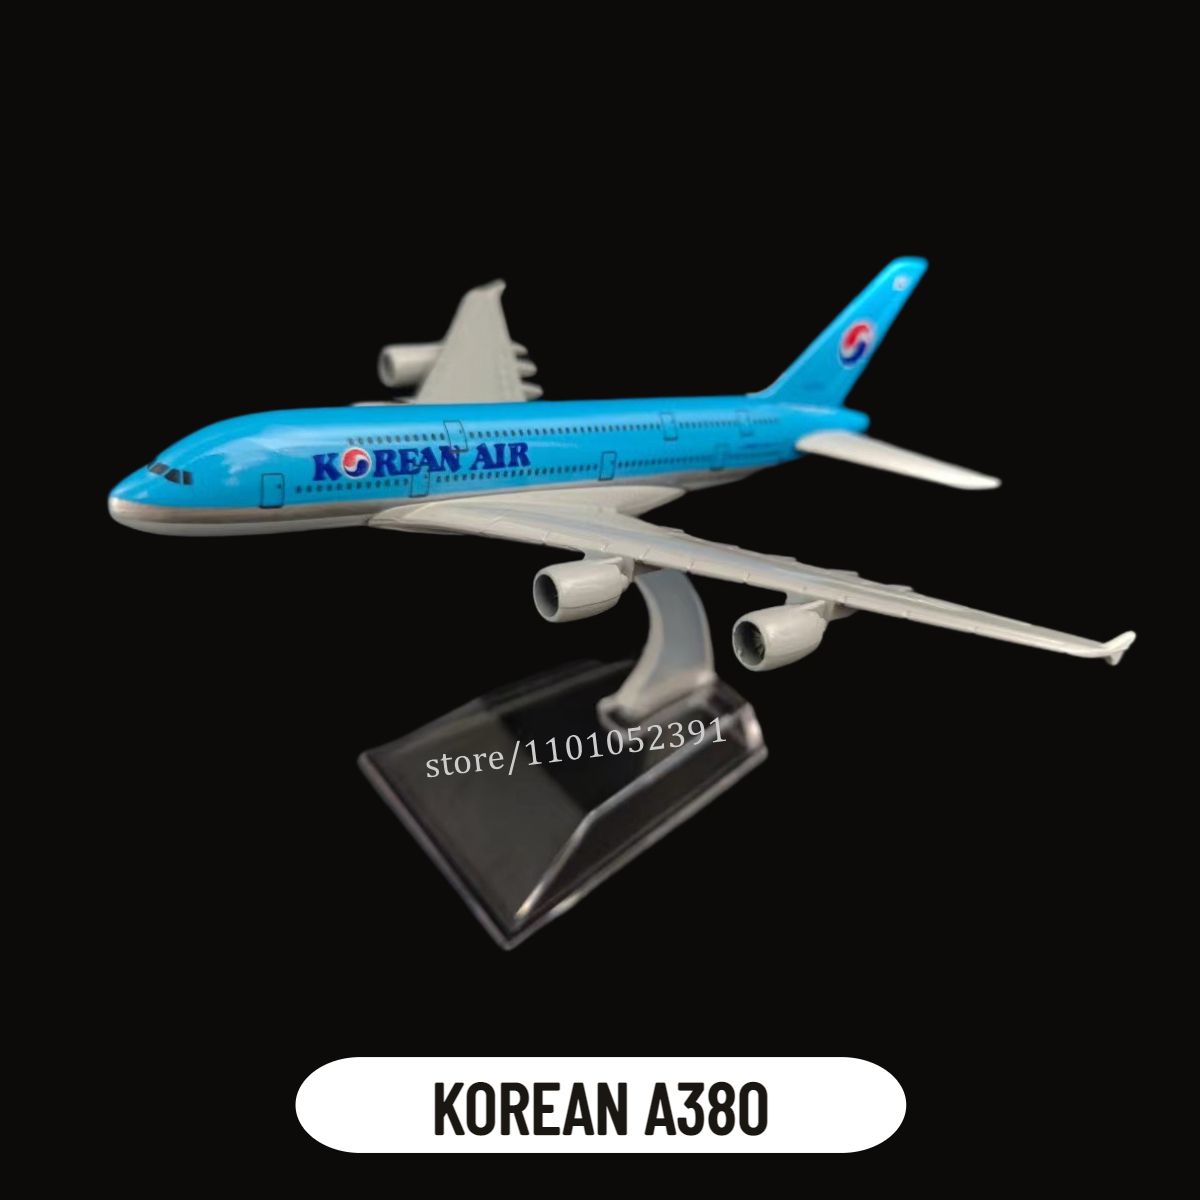 8.Korea A380